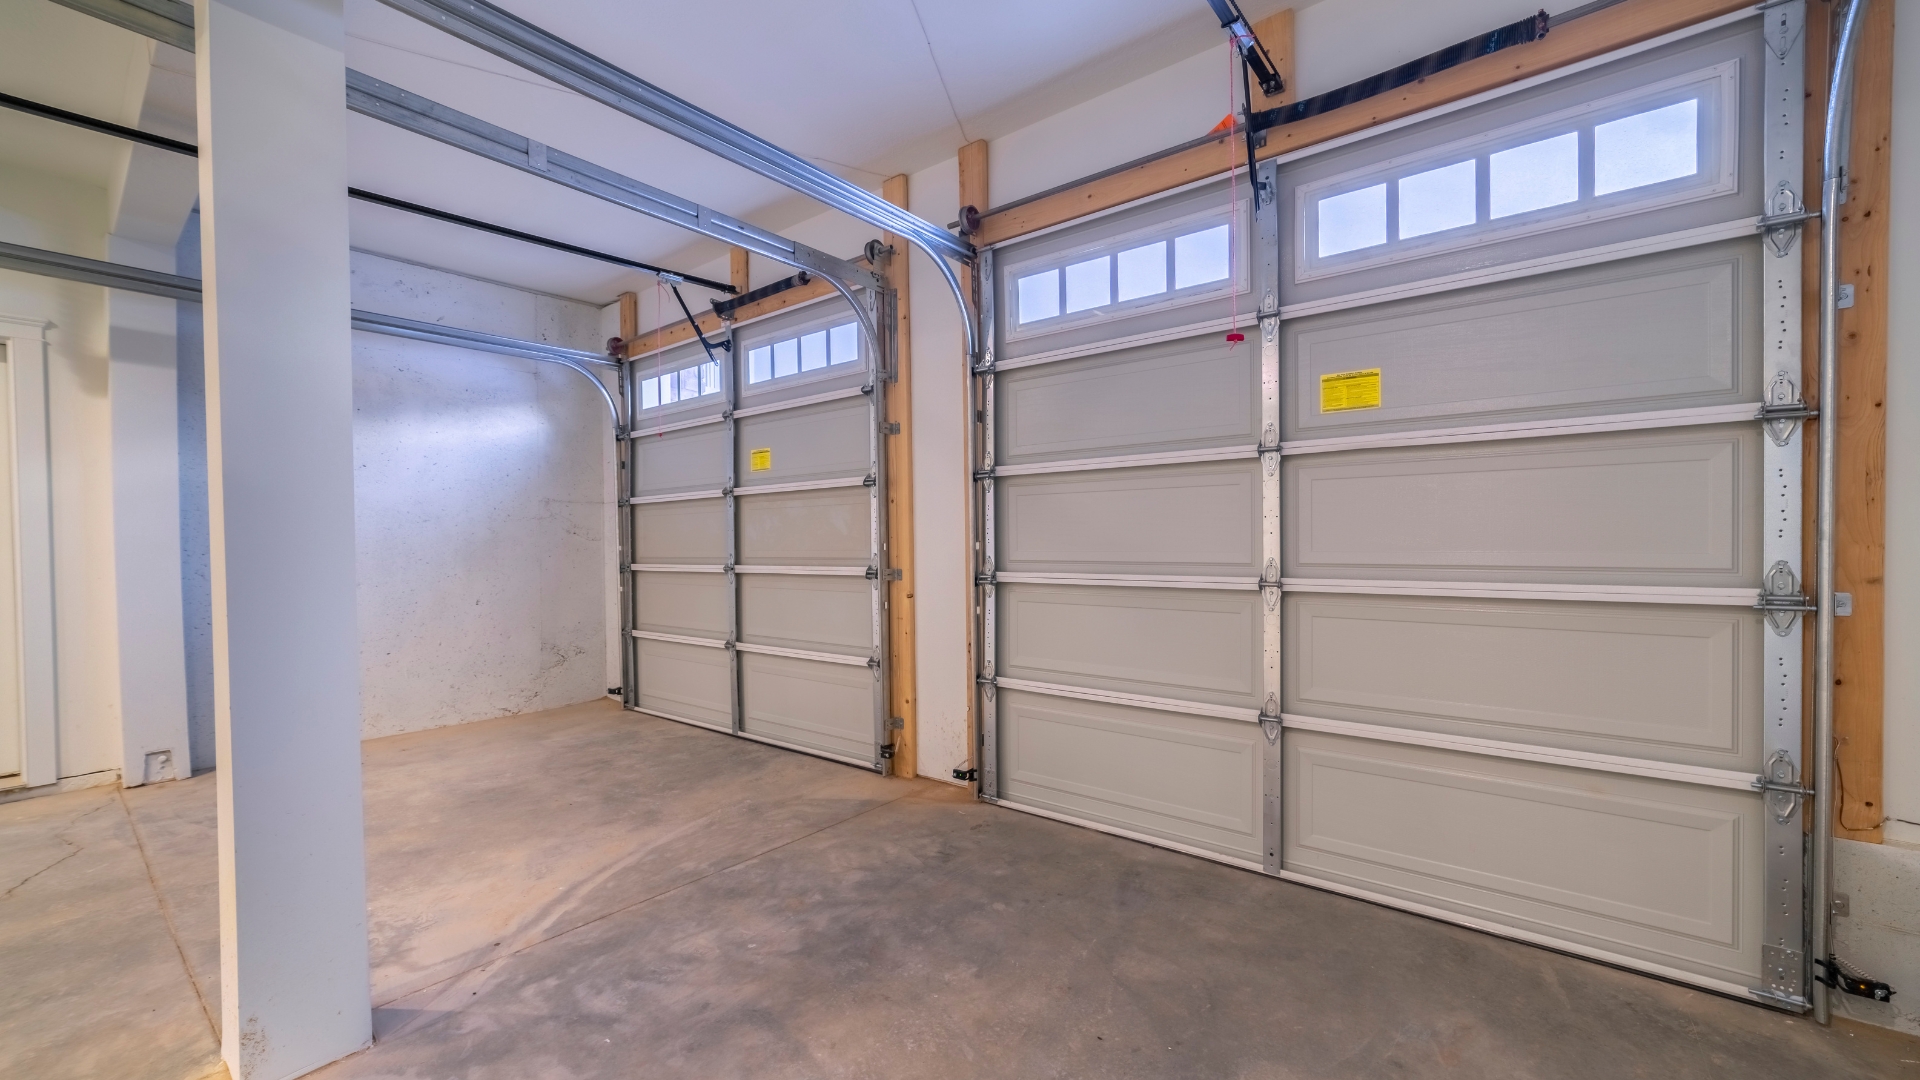 Garage doors with garage door storm braces